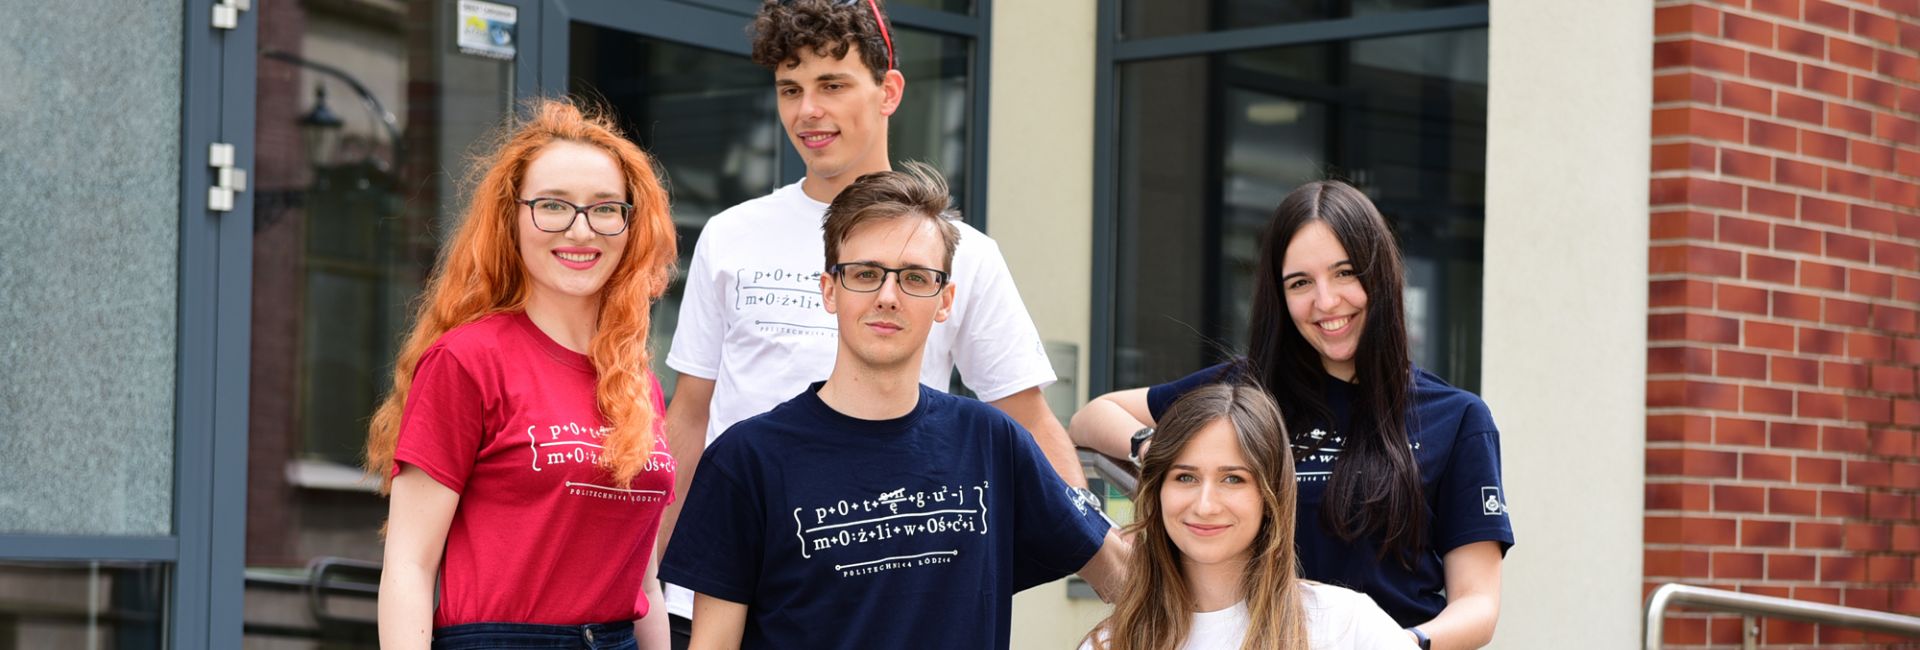 Pięcioro uśmiechniętych studentów w kolorowych koszulkach stoi na schodach przez szklano-ceglastym budynkiem.